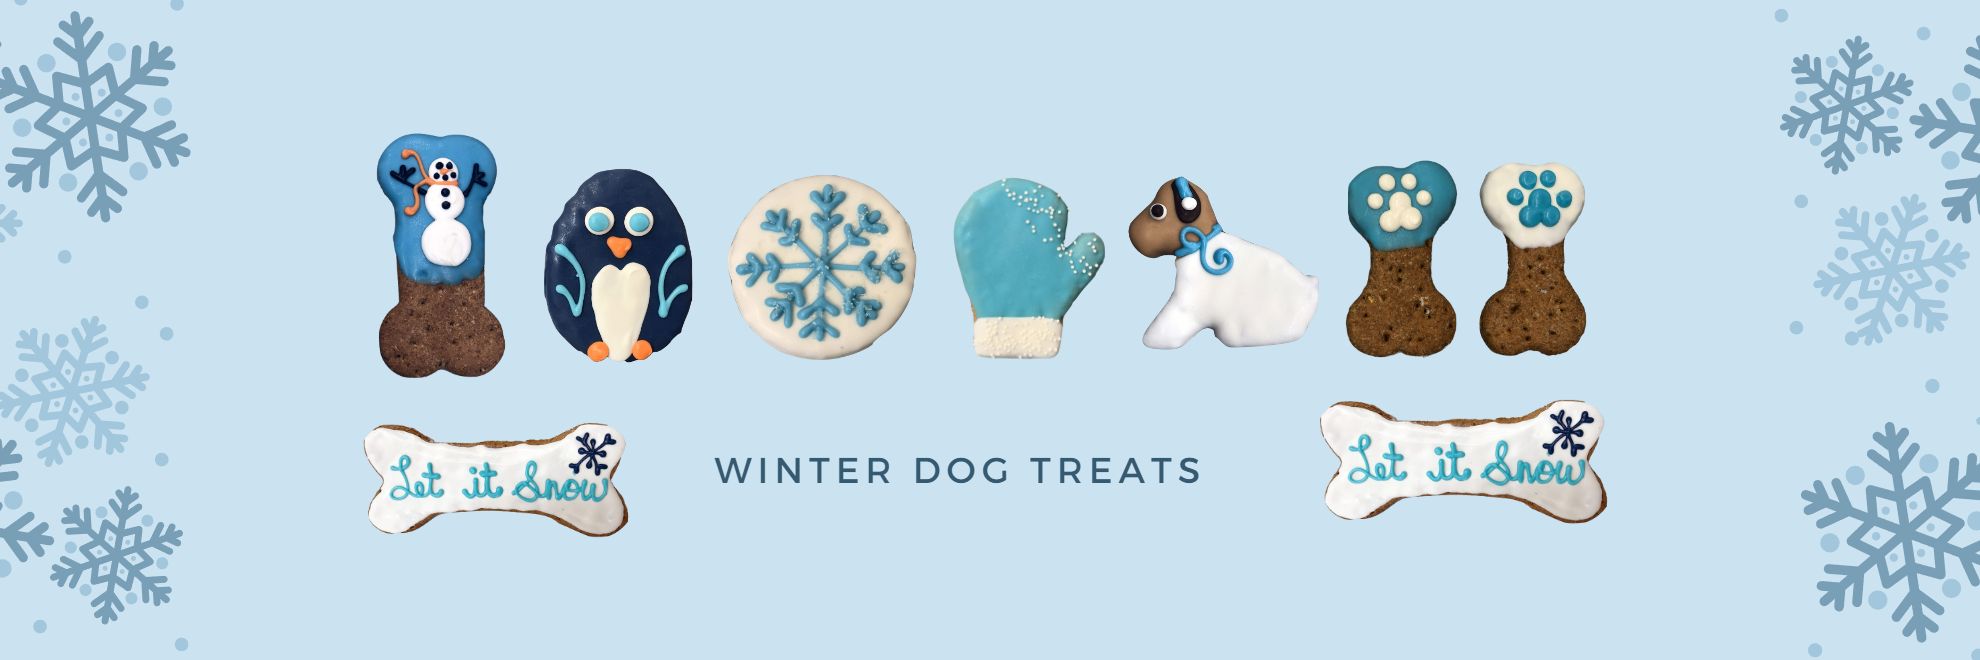 Winter Dog Treats & Cookies